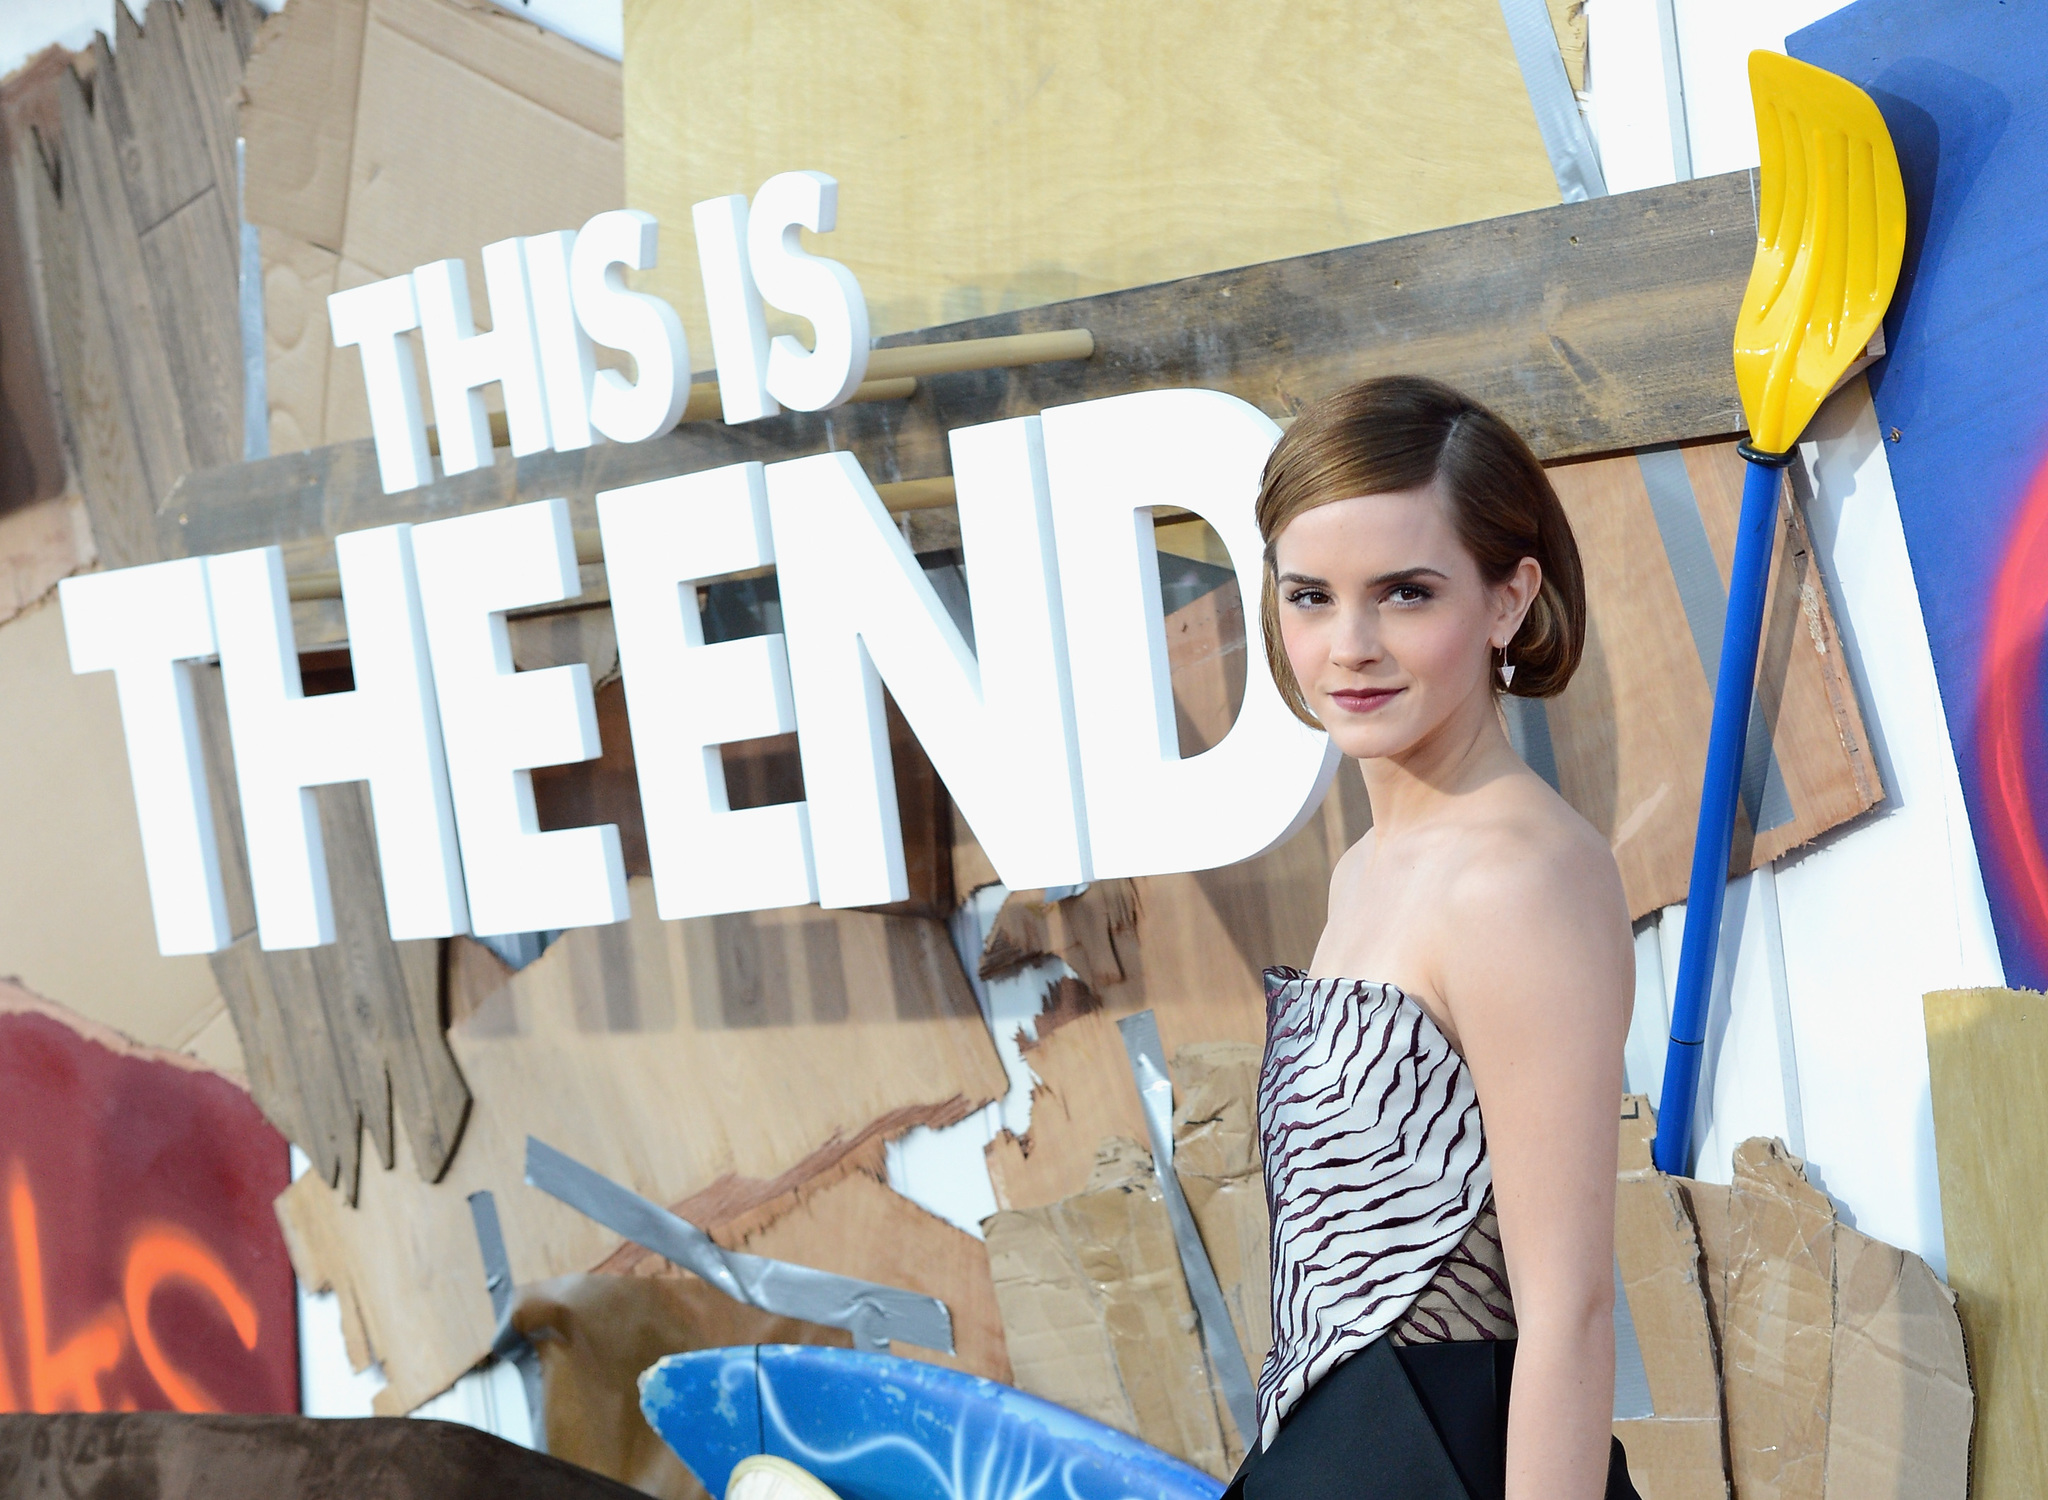 Emma Watson at event of Dabar jau tikrai sikna (2013)